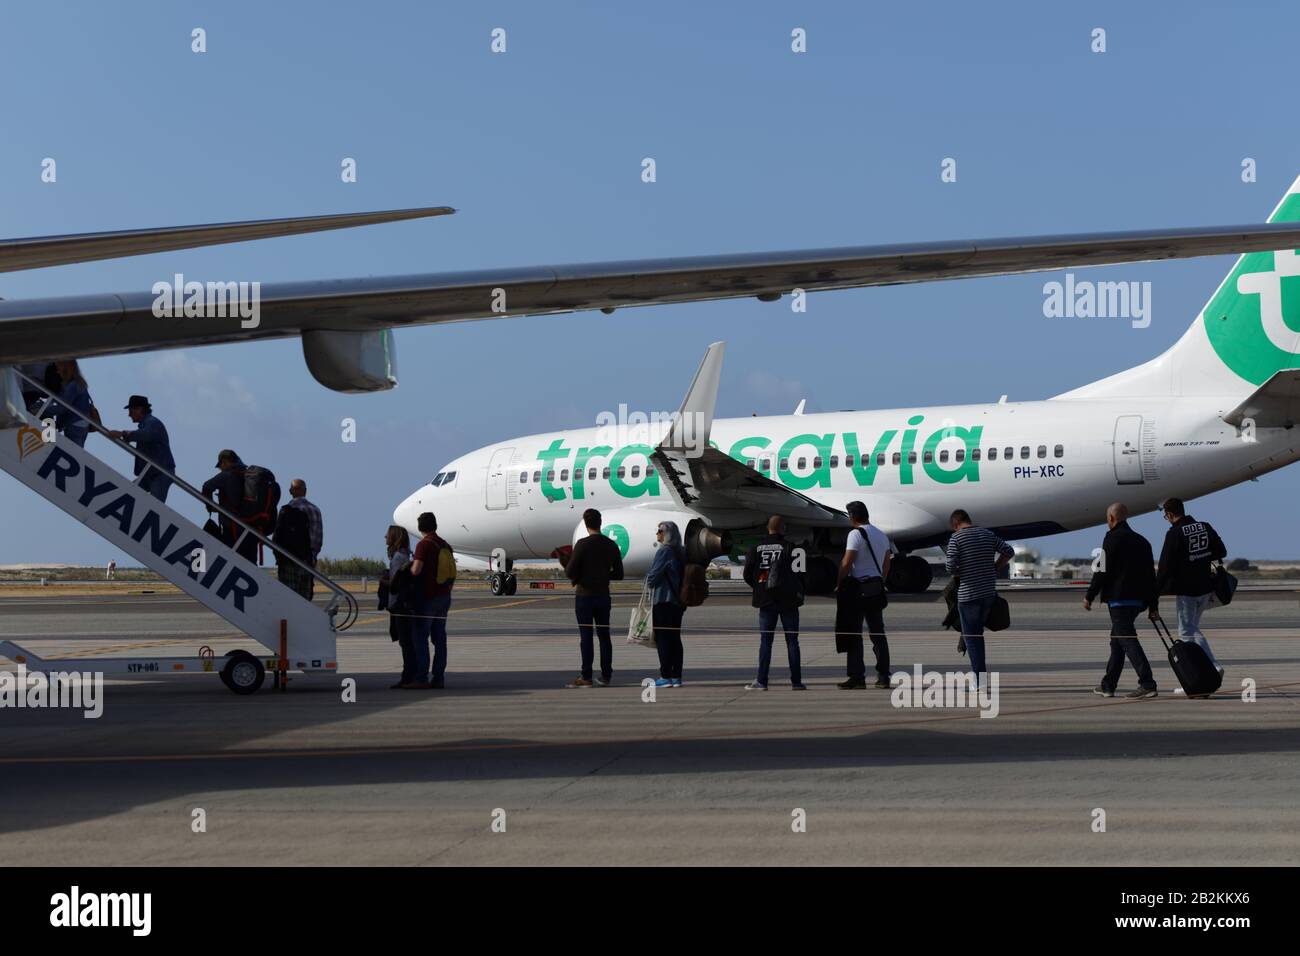 Passagiere, die mit dem Ryanair-Flugzeug gegen das Flugzeug einer anderen Billigfluggesellschaft Transavia im Flughafen Faro, Portugal, einsteigen Stockfoto